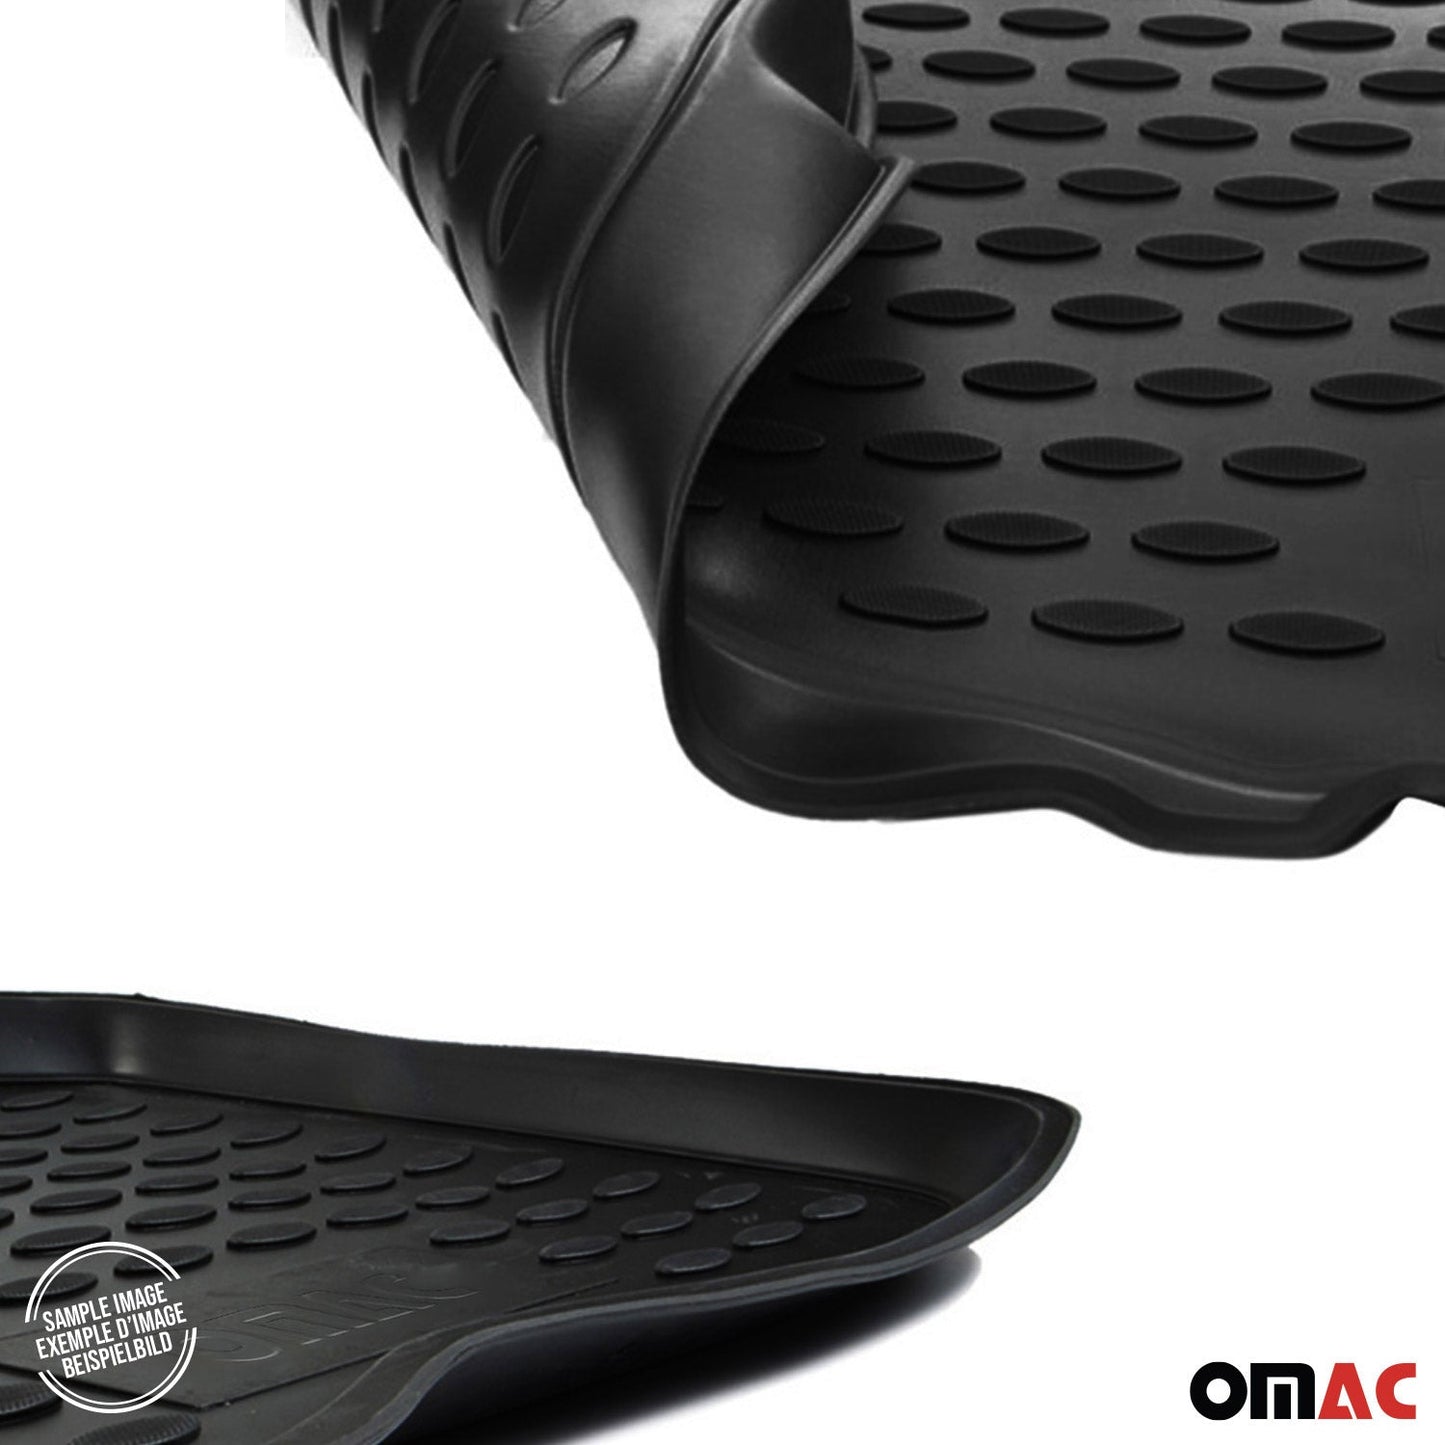 OMAC OMAC Premium Floor Mats & Cargo Liners for Lexus ES 350 2013-2018 TPE Black 9991444-250